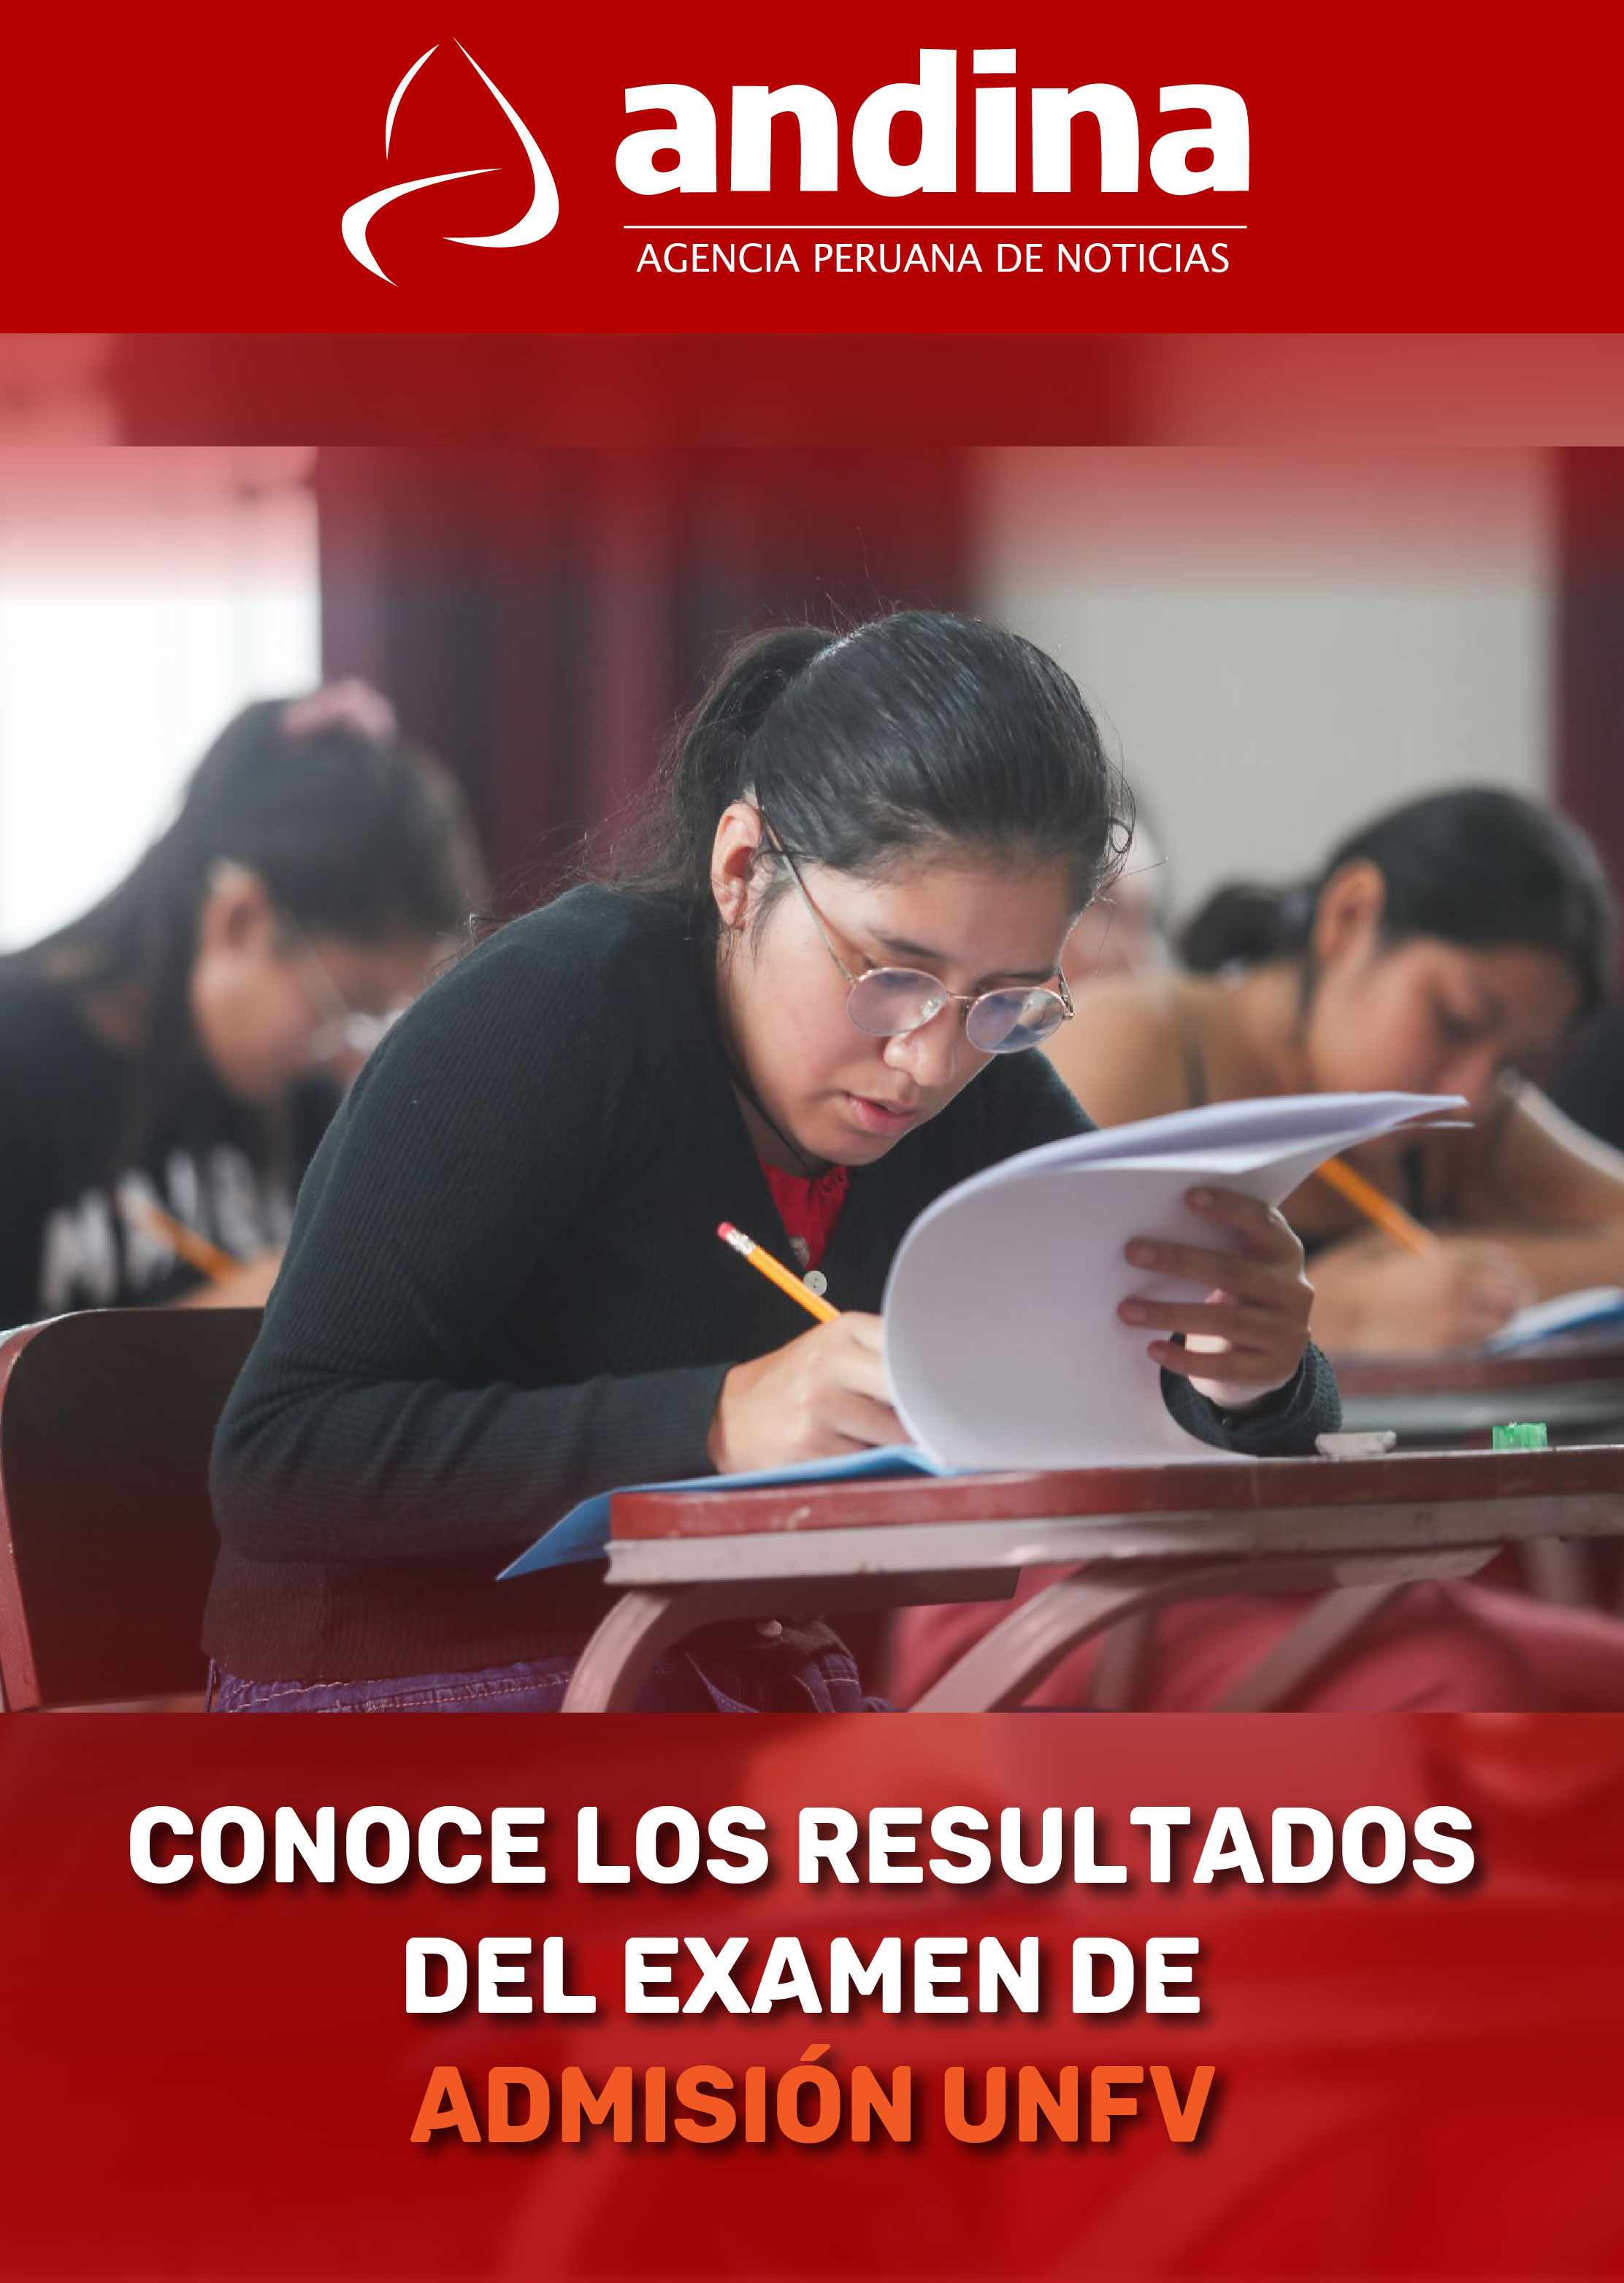 Andina: Conoce aquí los resultados del examen de admisión